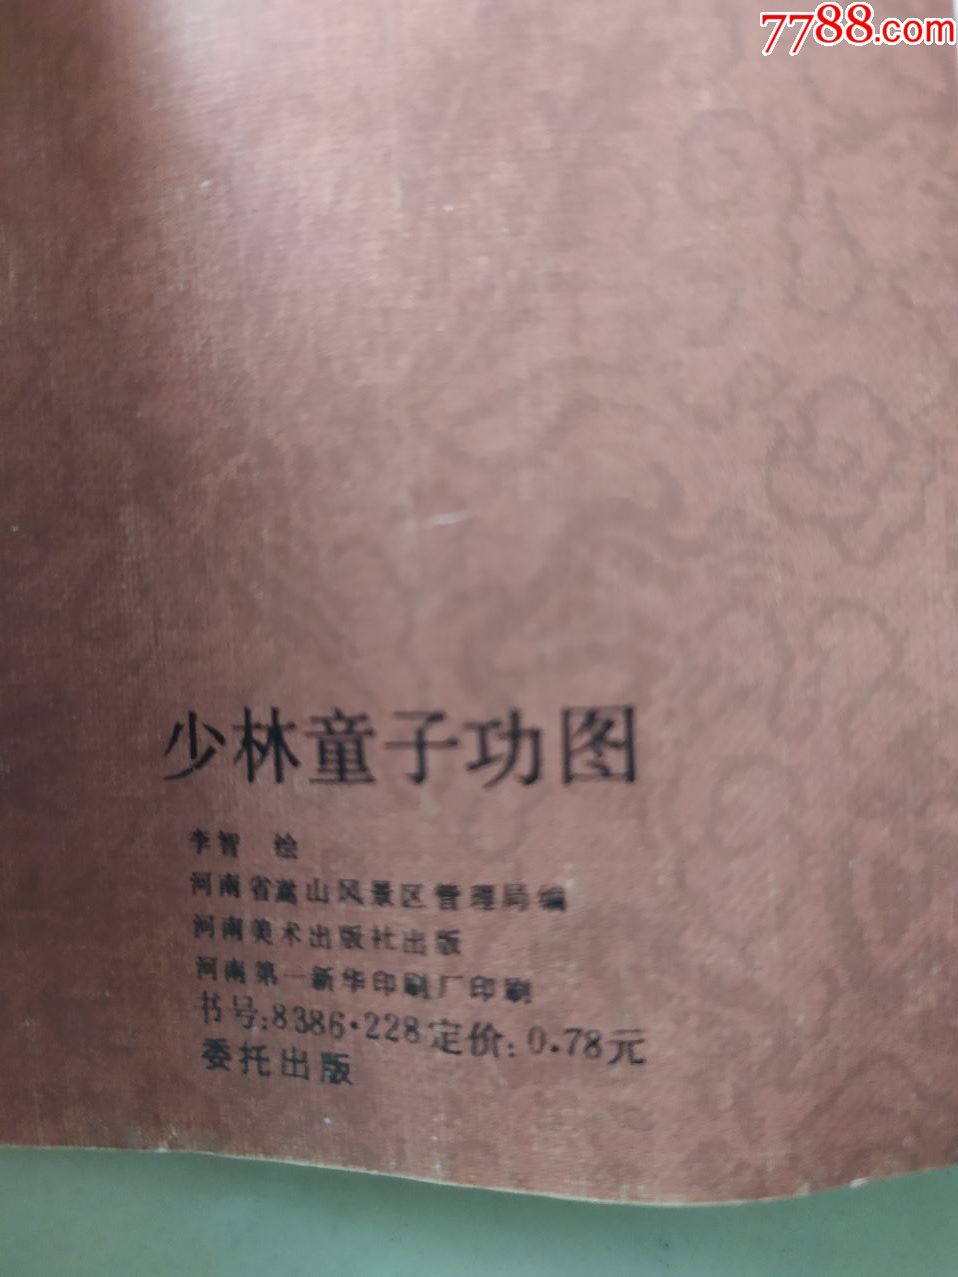 少林童子功图,河南美术出版社出版,少林法师德禅题字,范曾题写图名